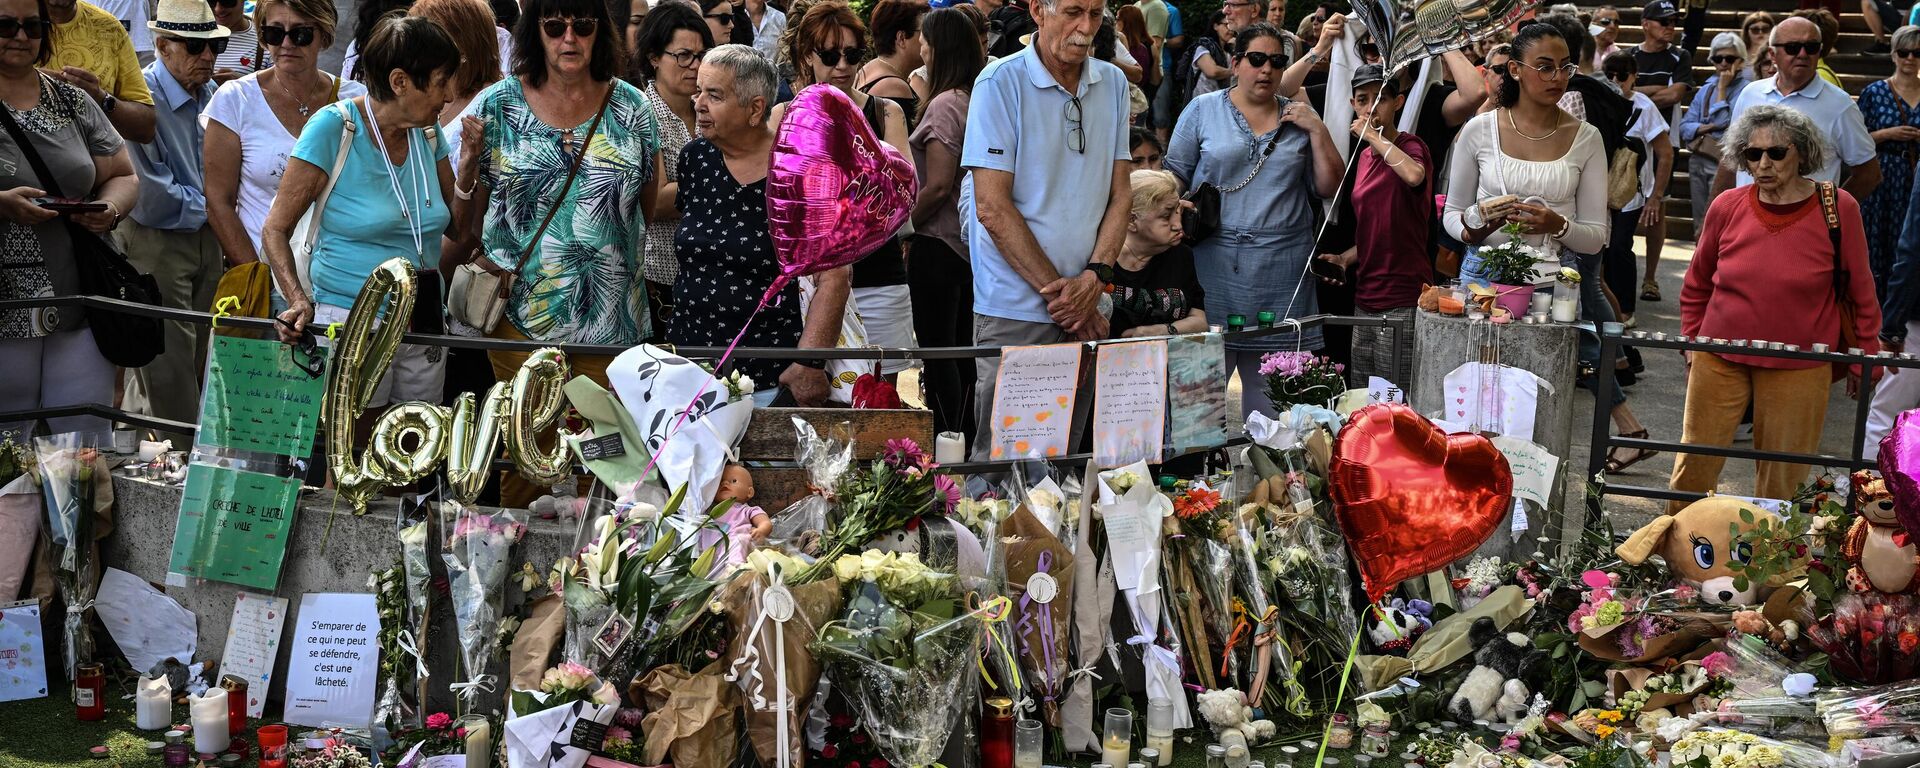 Fransa'nın Annecy kenti sakinleri, parkta çocuklara bıçaklı saldırı sonrası kurbanlarla ailelerine destek için olay yerinde toplandı. (11 Haziran 2023) - Sputnik Türkiye, 1920, 11.06.2023